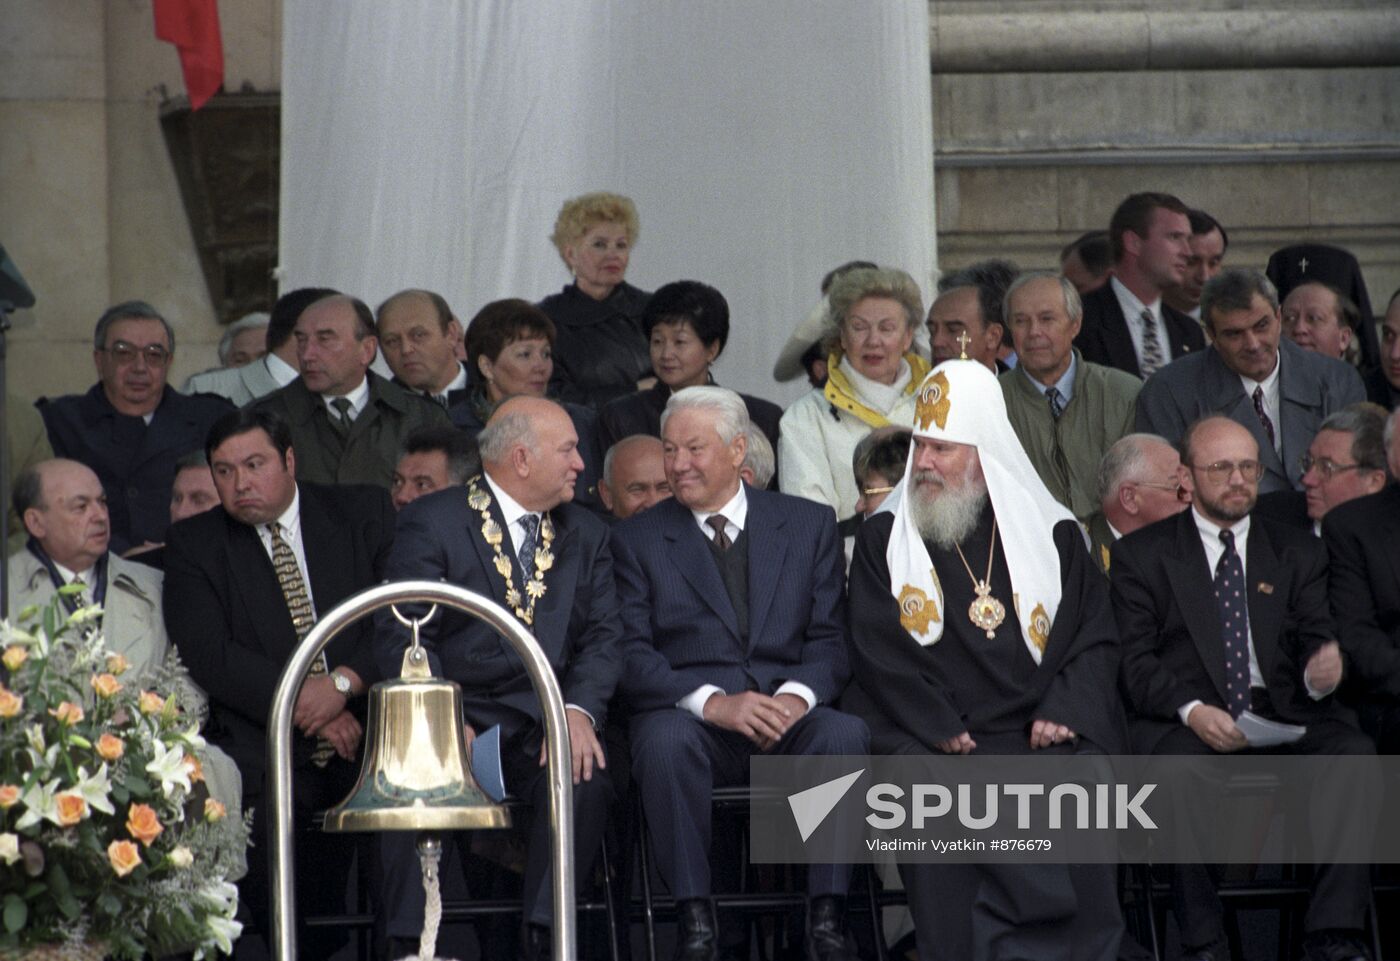 Yuri Luzhkov, Boris Yeltsin, and Alexy II